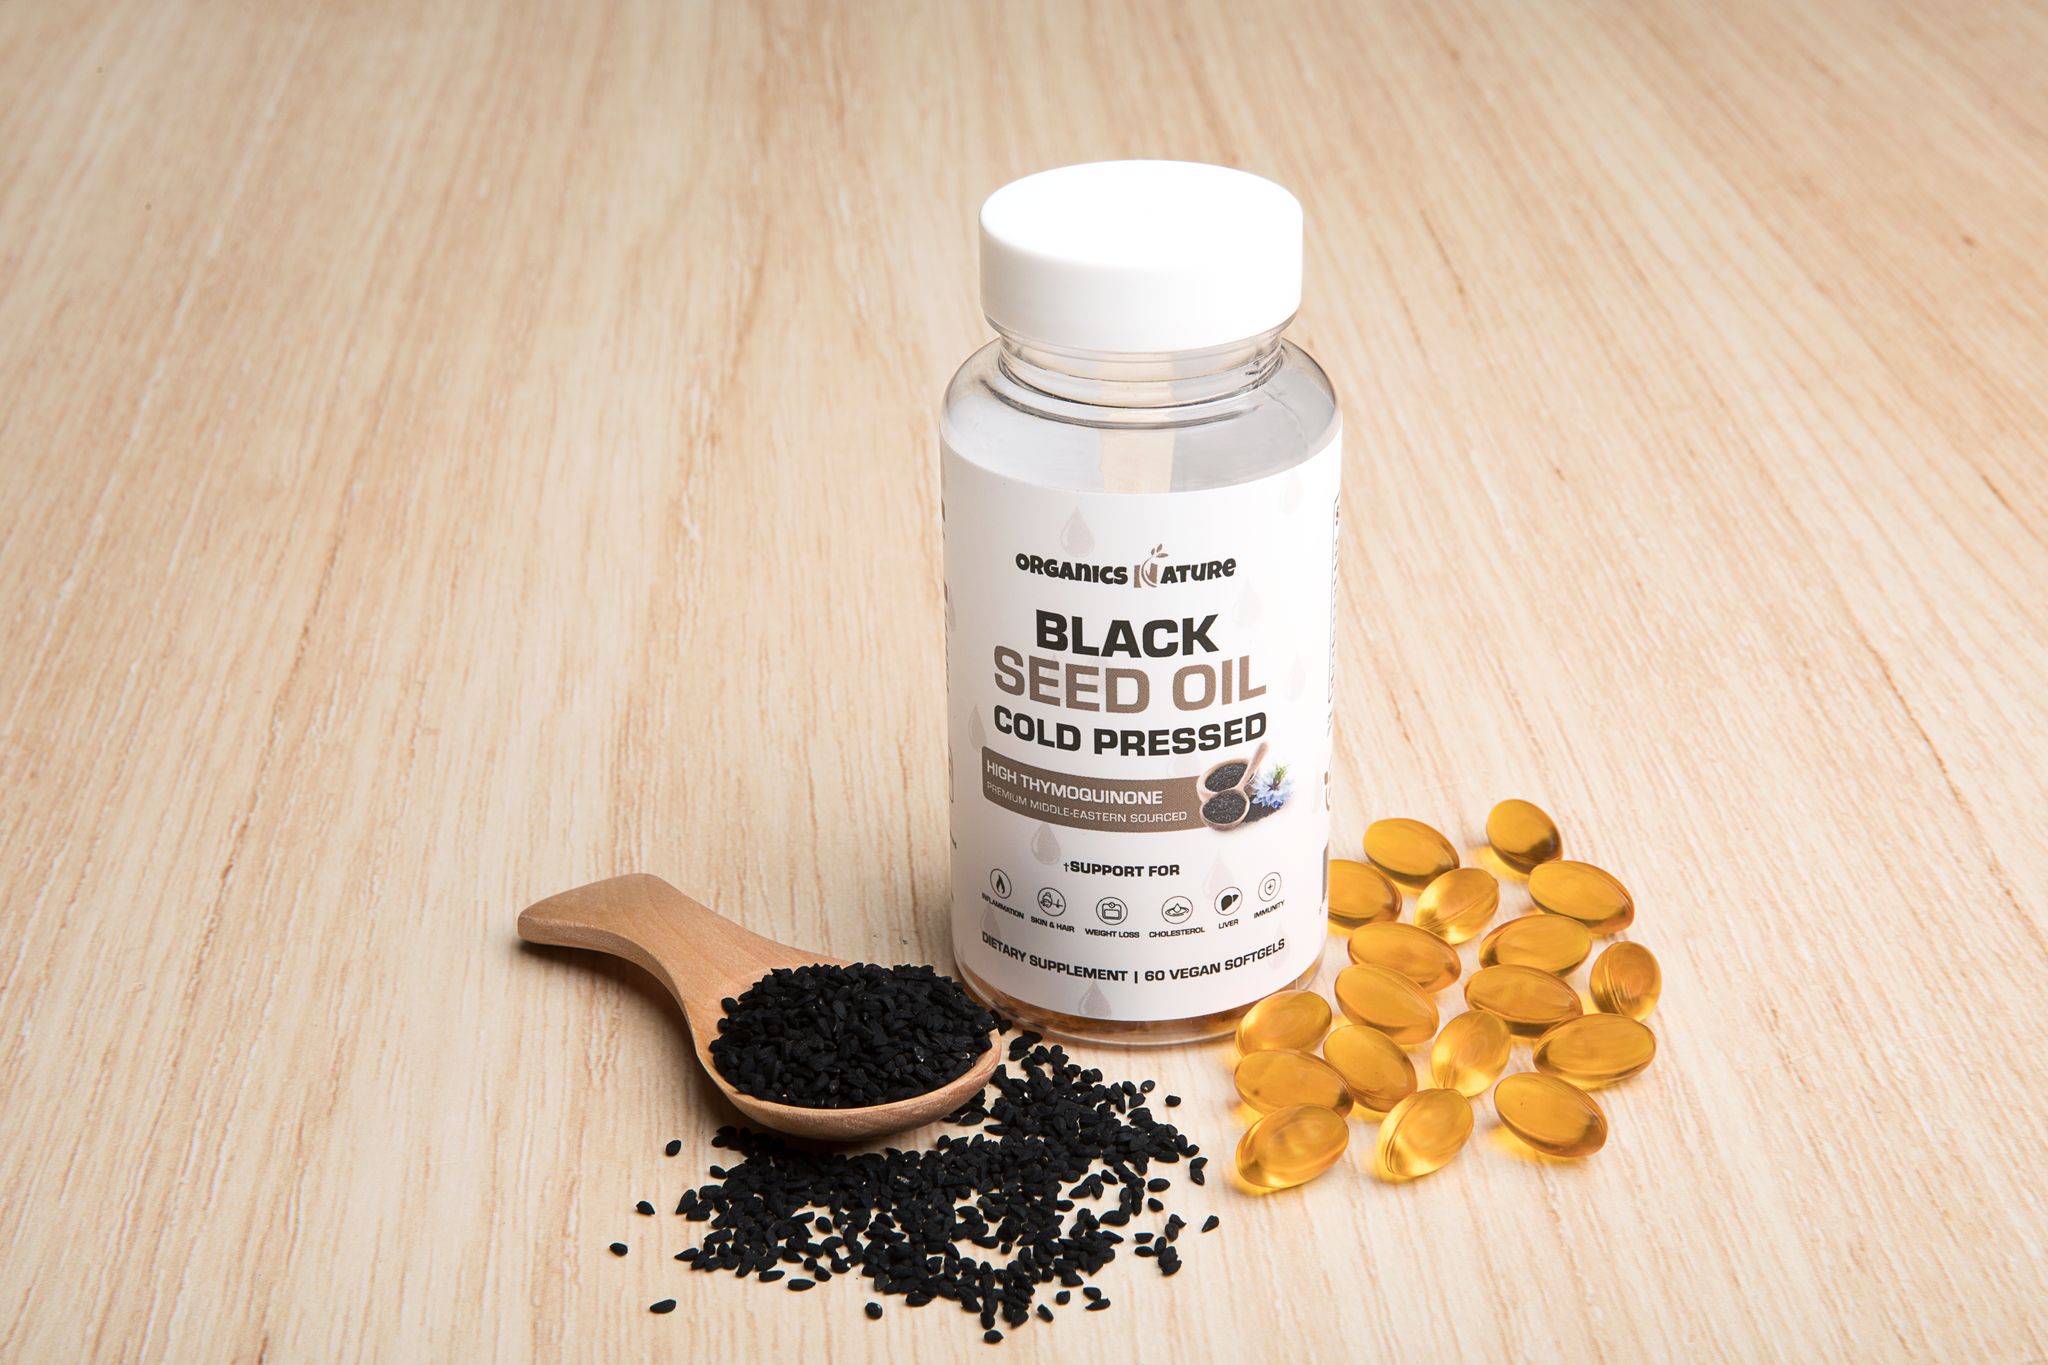 Organics nature black seed oil